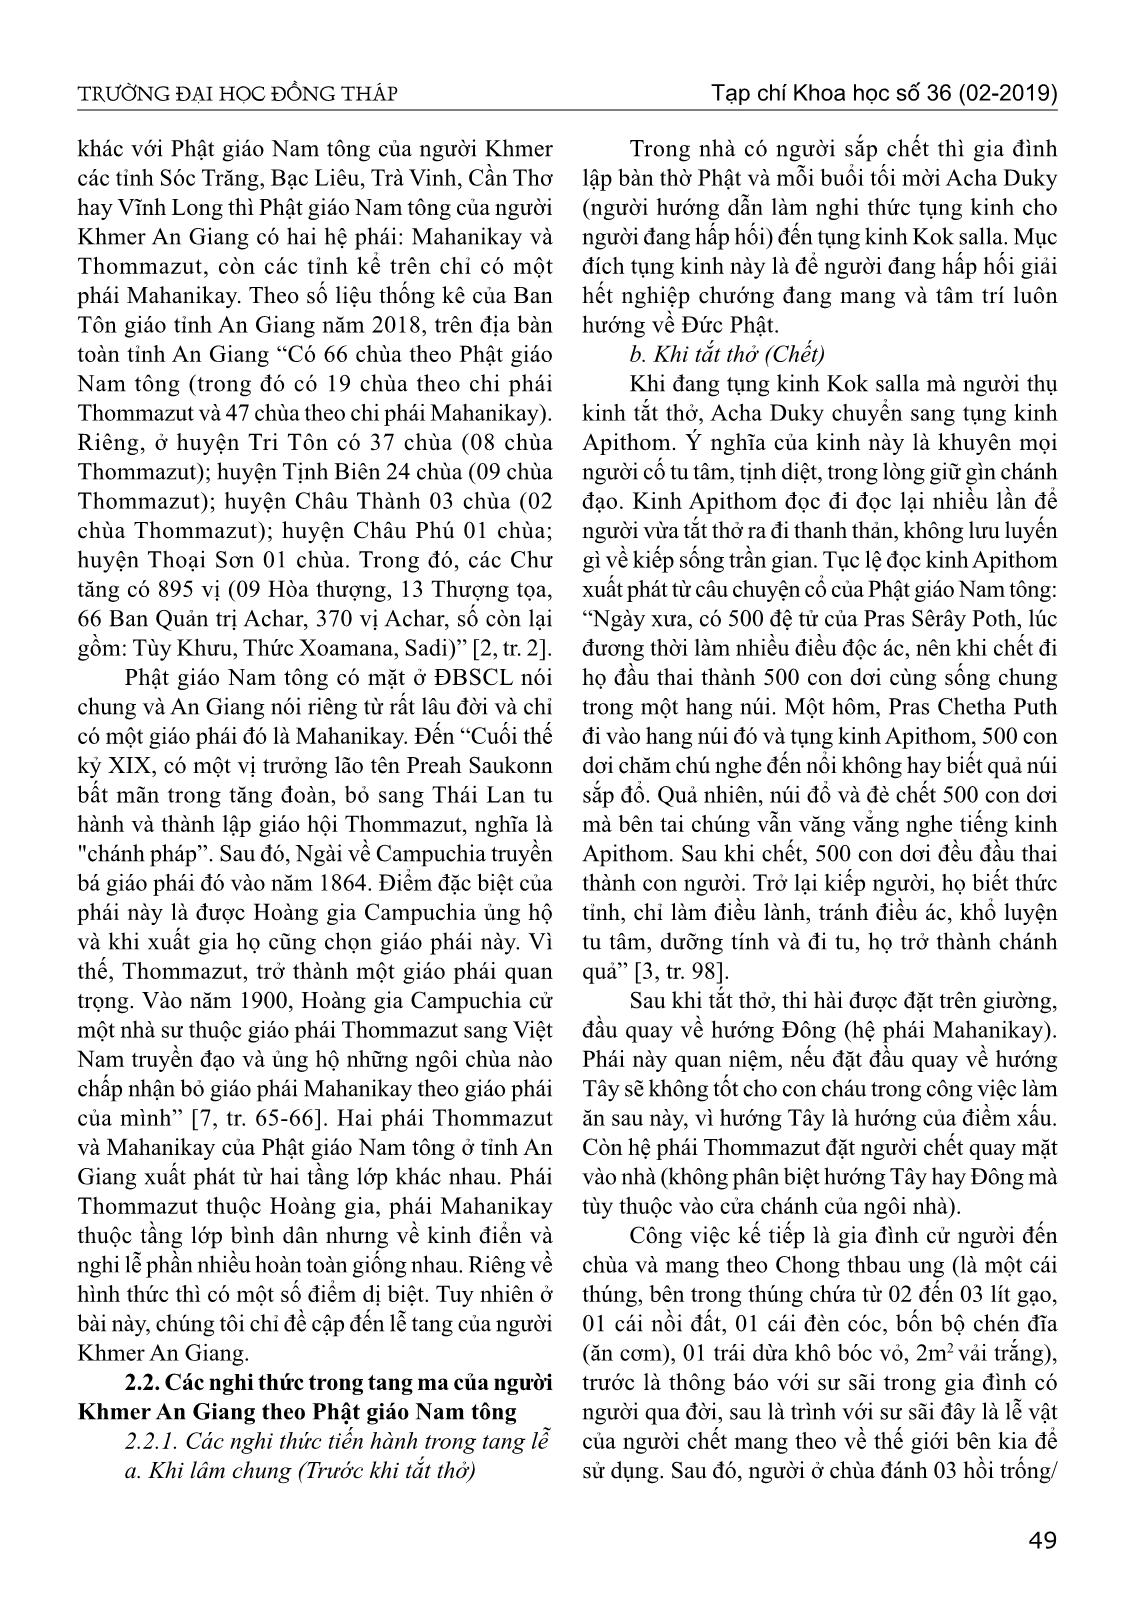 Tang lễ của người Khmer theo Phật giáo Nam Tông ở tỉnh An Giang hiện nay trang 2